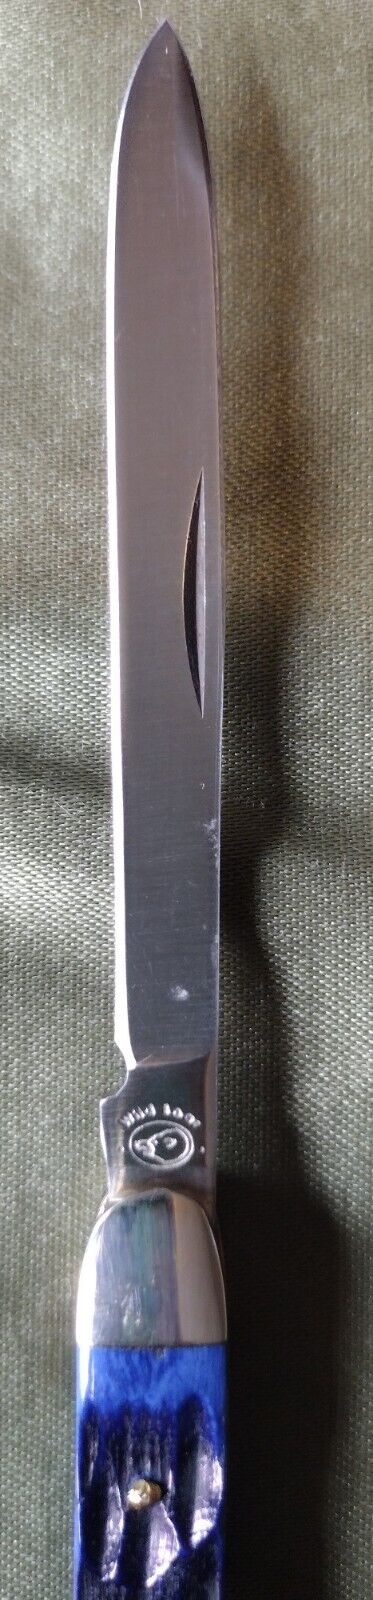 WILD BOAR Blue Jigged Bone Whittier Pocket knife. New  2012 Made in Pakistan